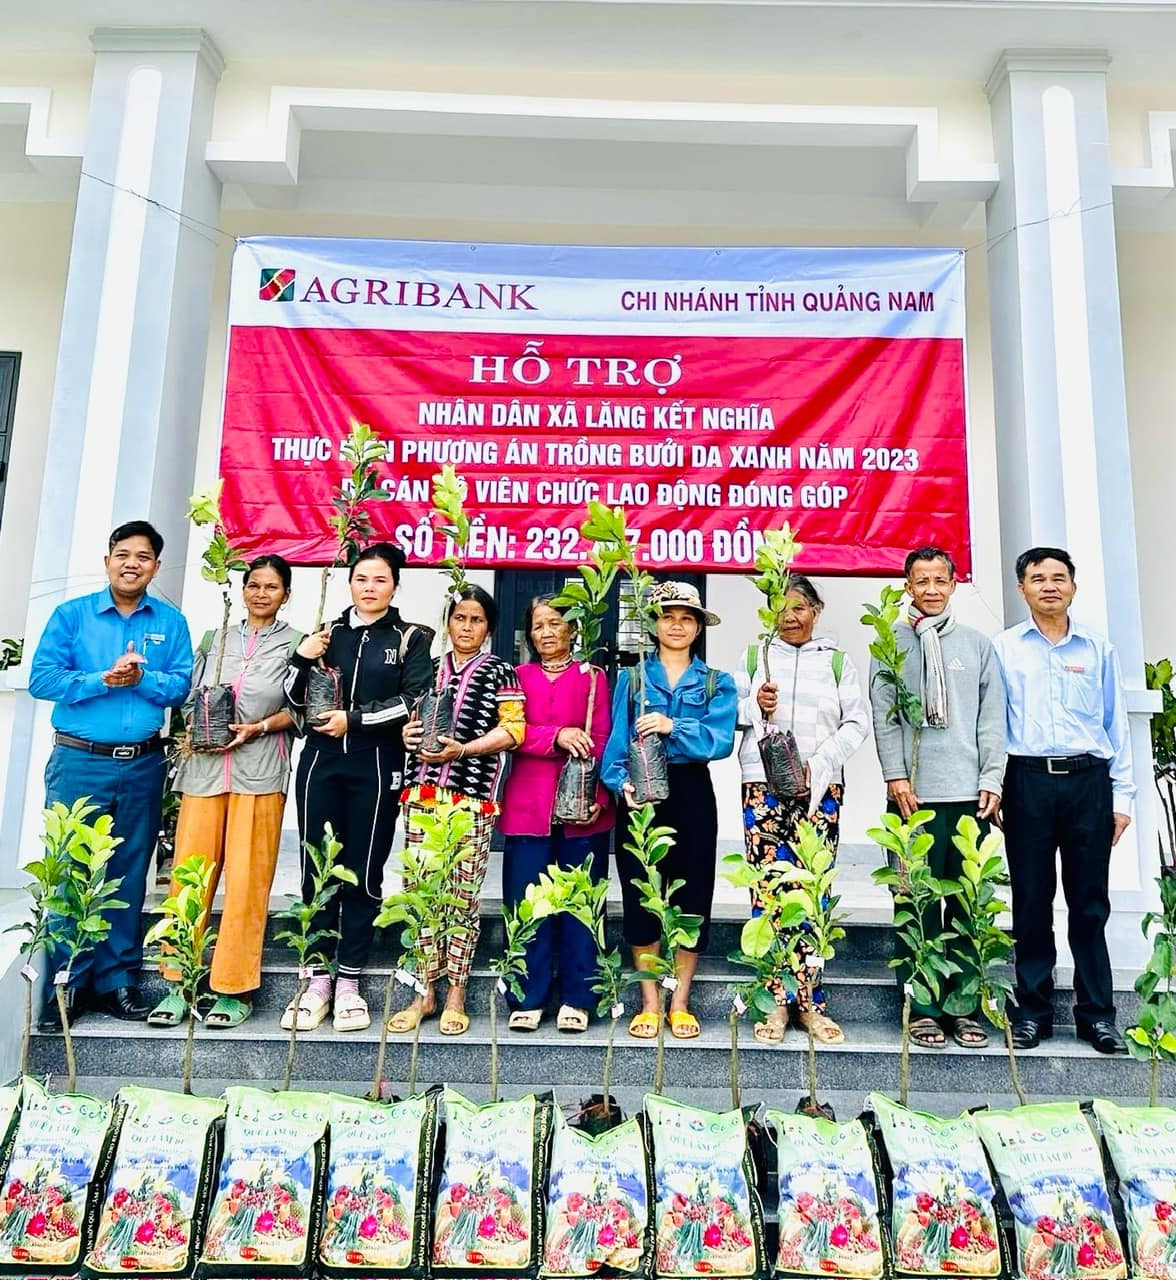 Agribank Quảng Nam “mở đường” cho nhân dân xã Lăng phát triển kinh tế - Ảnh 1.